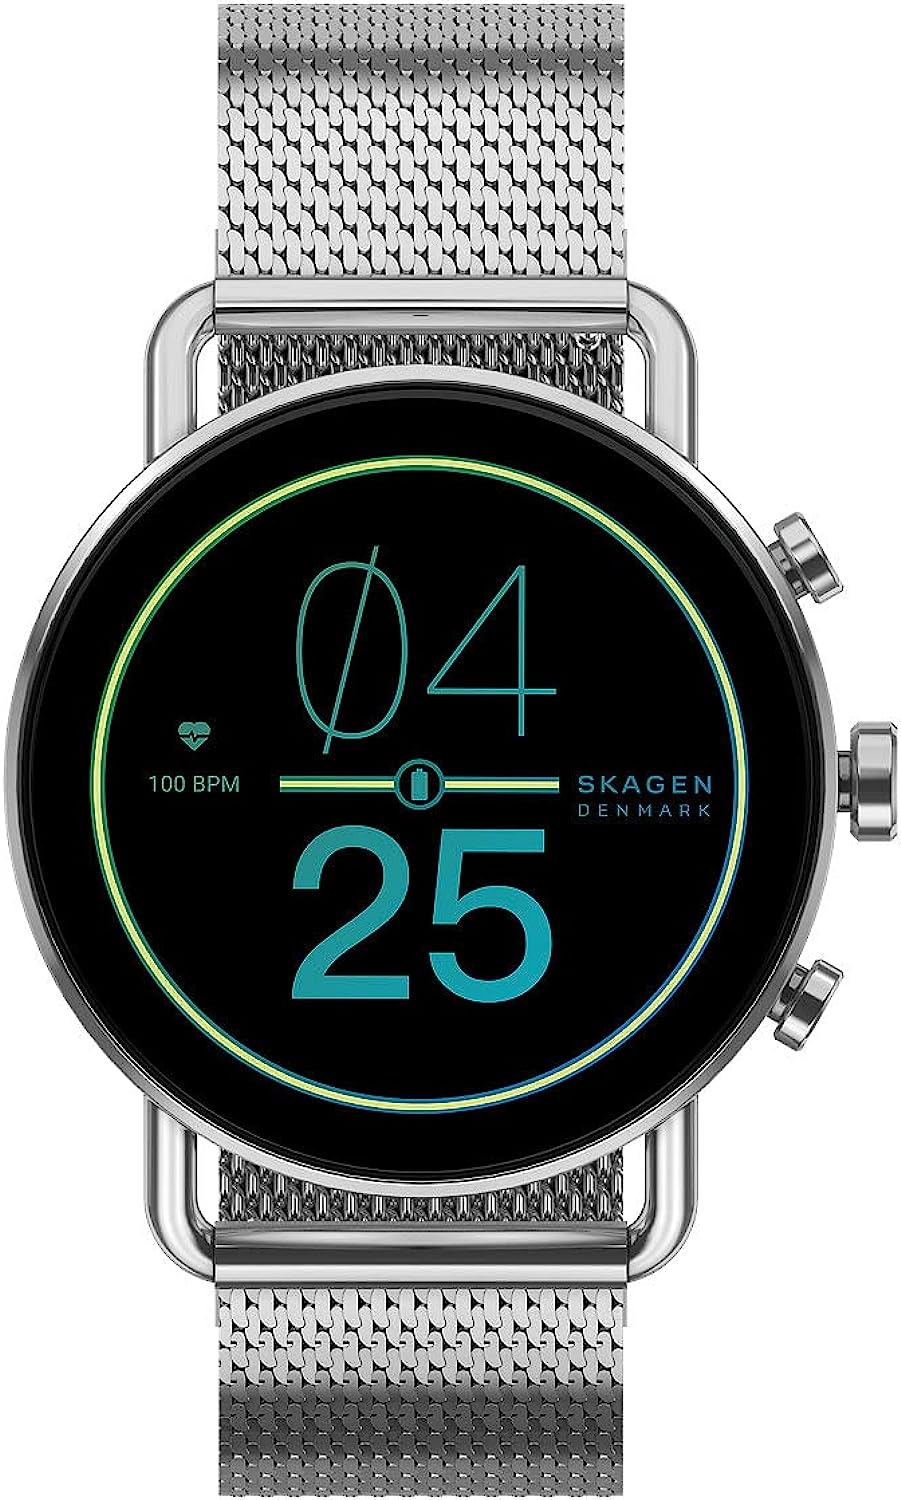 スカーゲン腕時計 FALSTER タッチスクリーンスマートウォッチ ジェネレーション6 SKT5300 シルバー